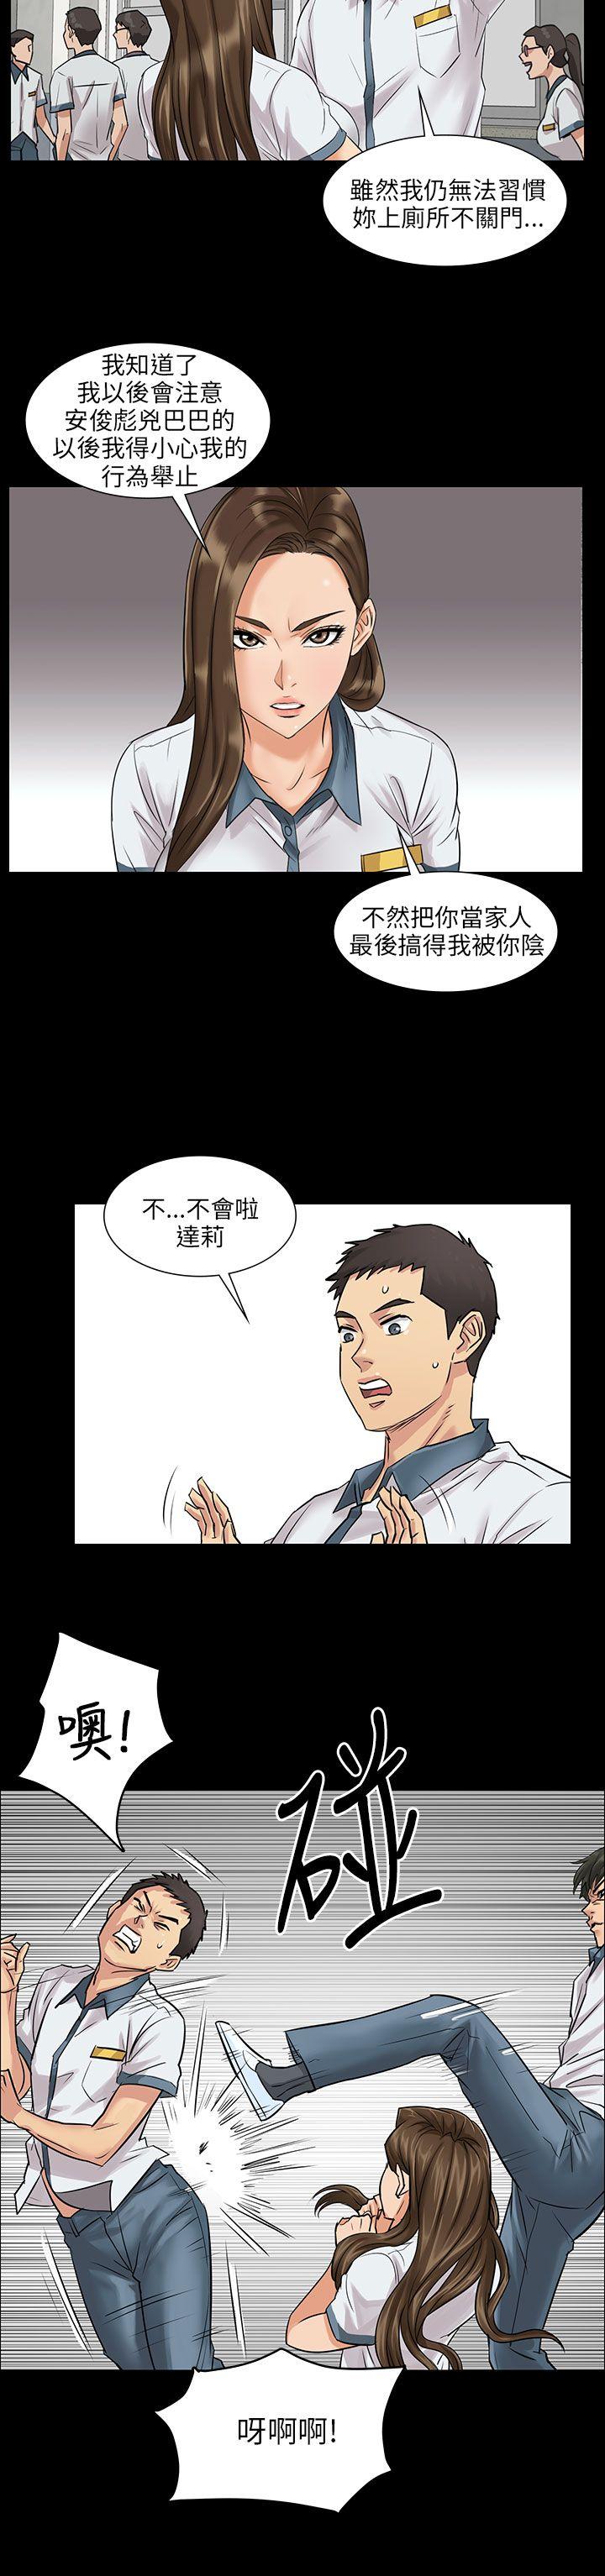 韩国污漫画 傀儡 第1话 43